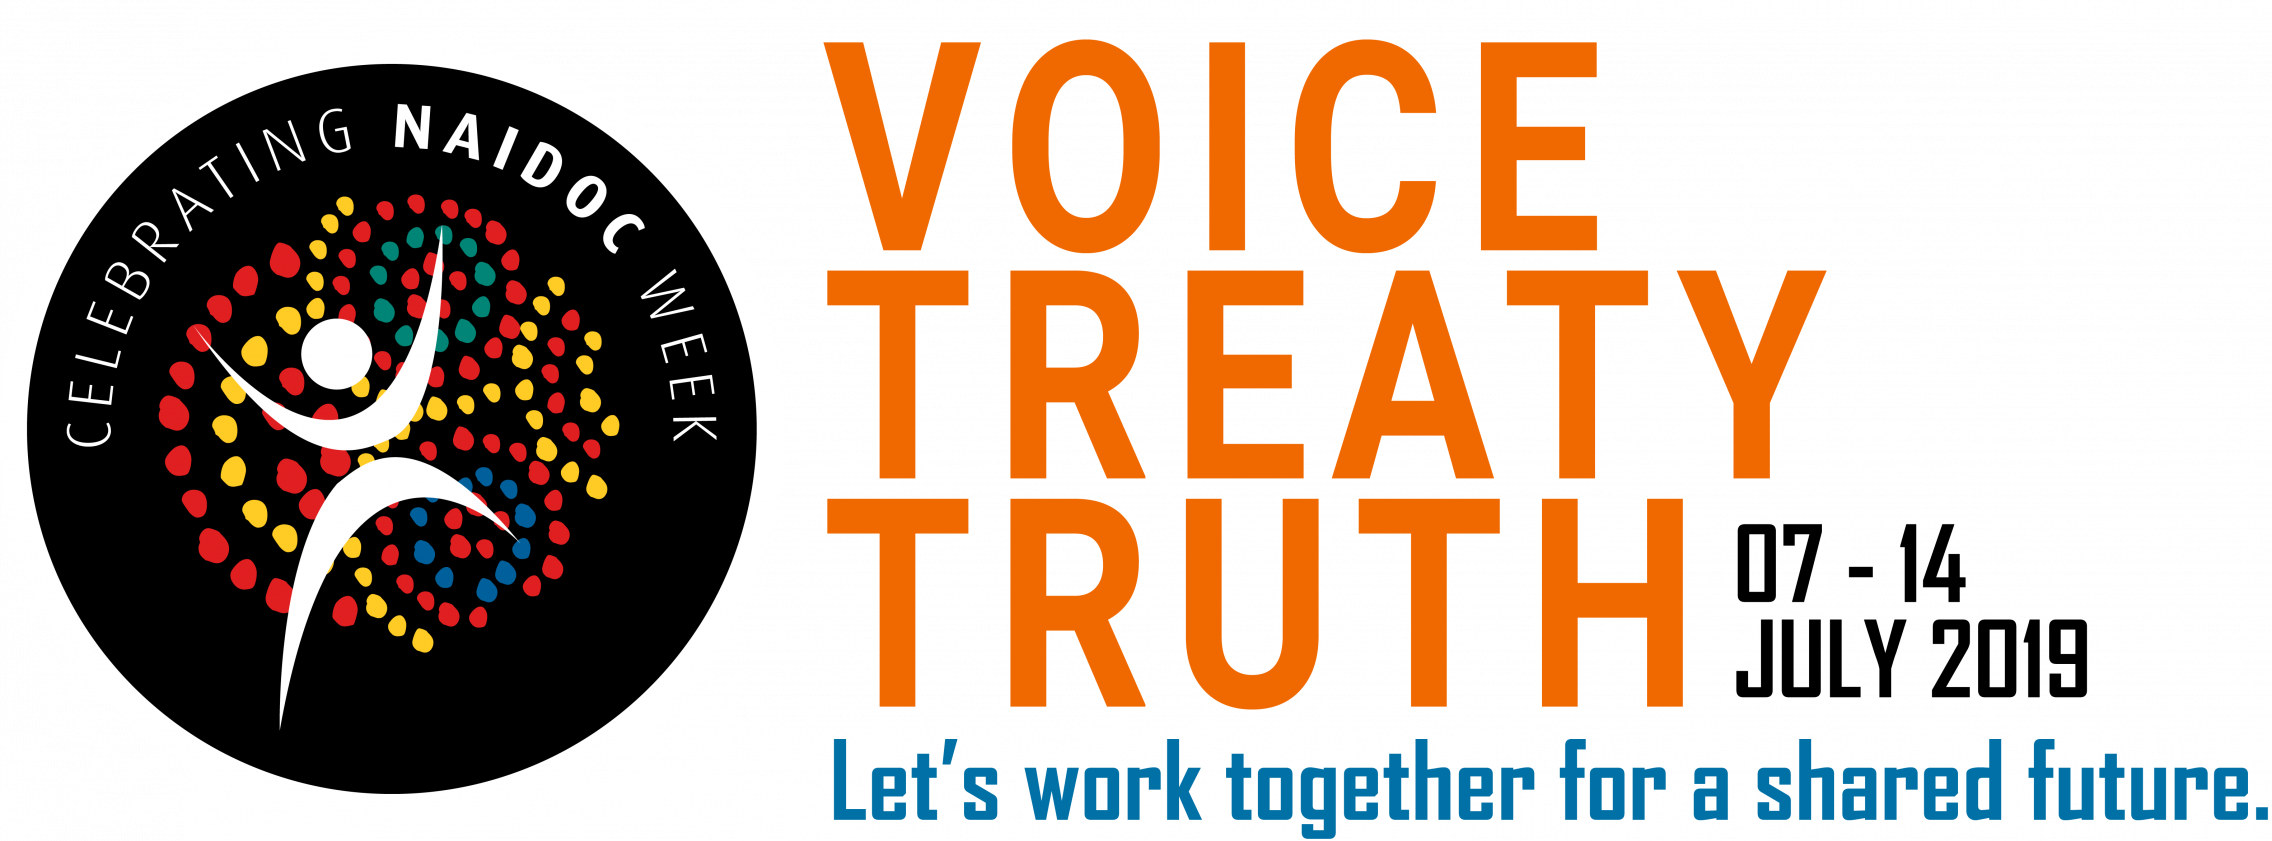 NAIDOC Week logo 2019, Voice, Treaty, Truth